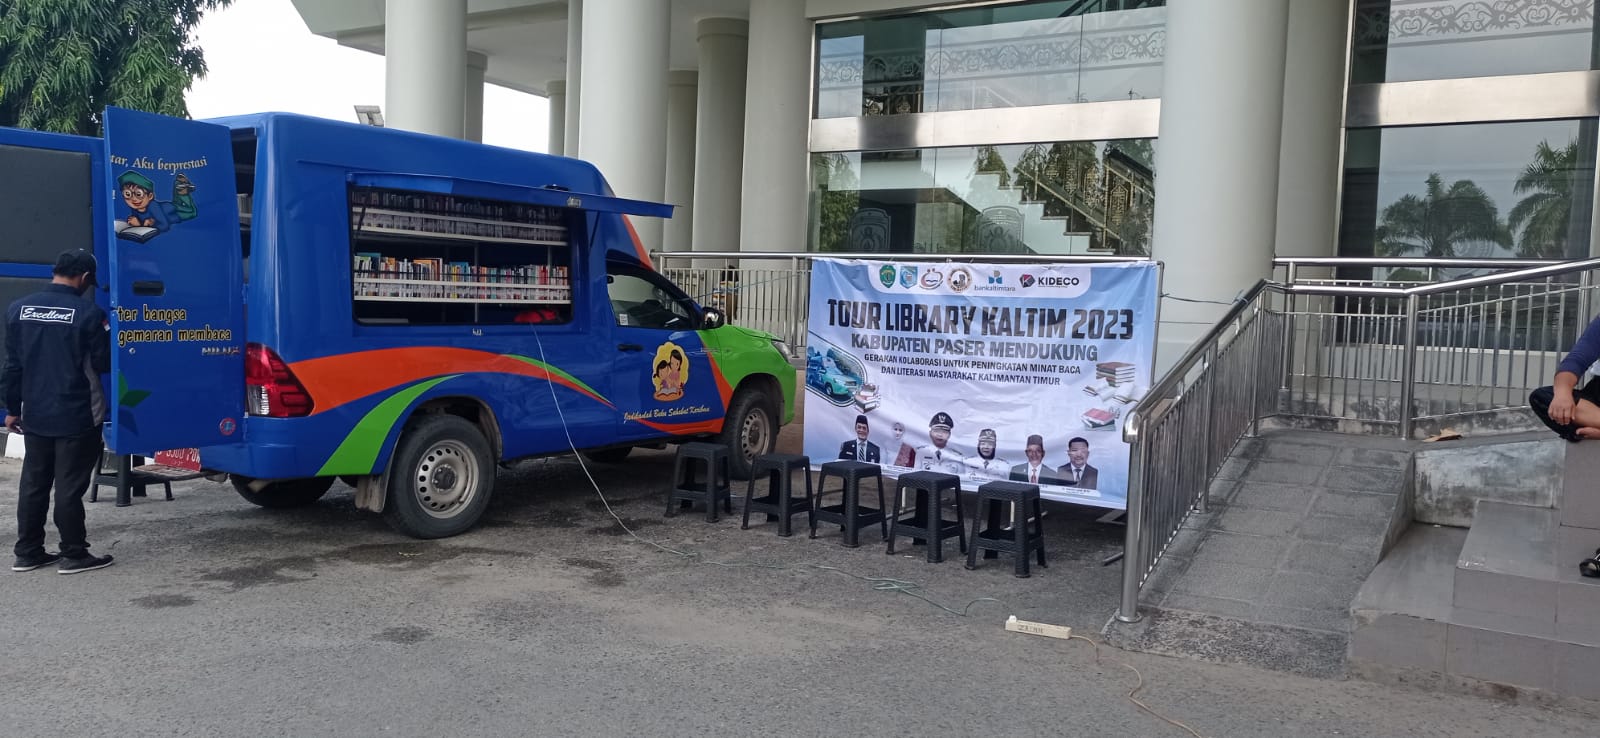 Tour Library Kalimantan Timur 2023, Promosi dan Kampanye Budaya Baca dan Literasi Masyarakat